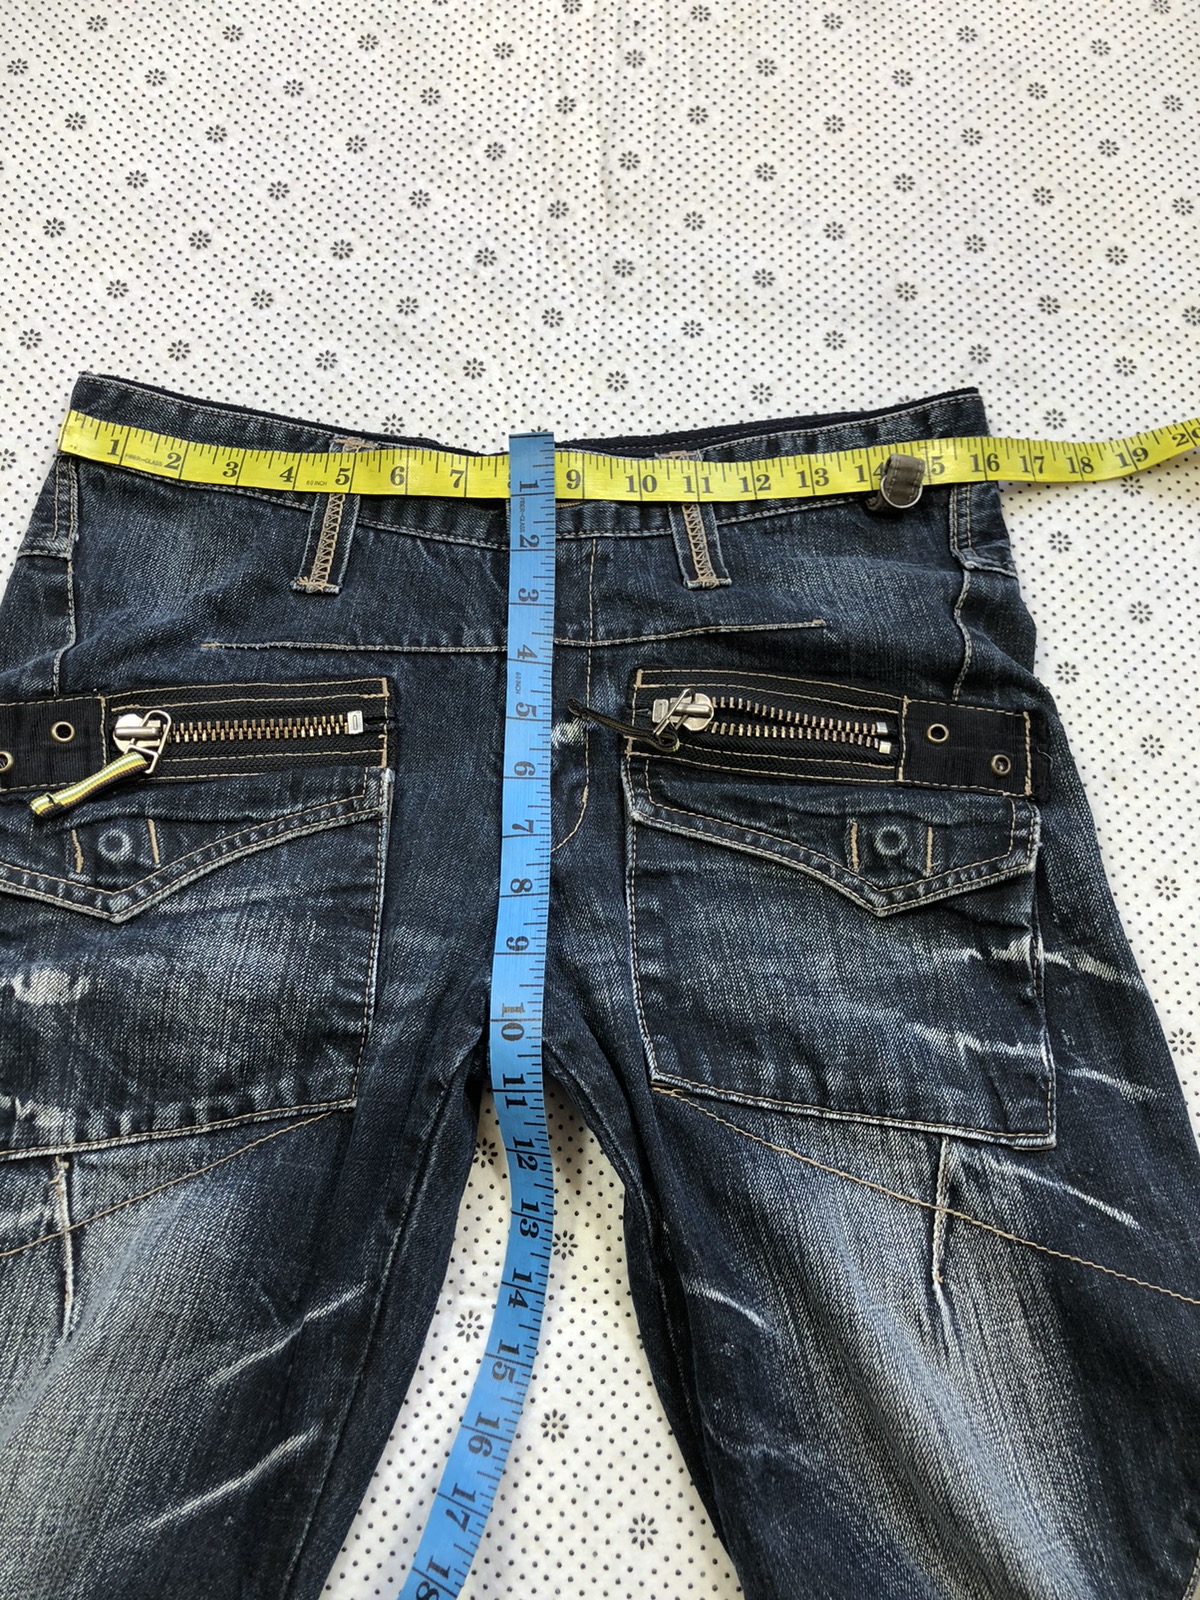 Archival Clothing - PPFM bondage jeans tactical zipper